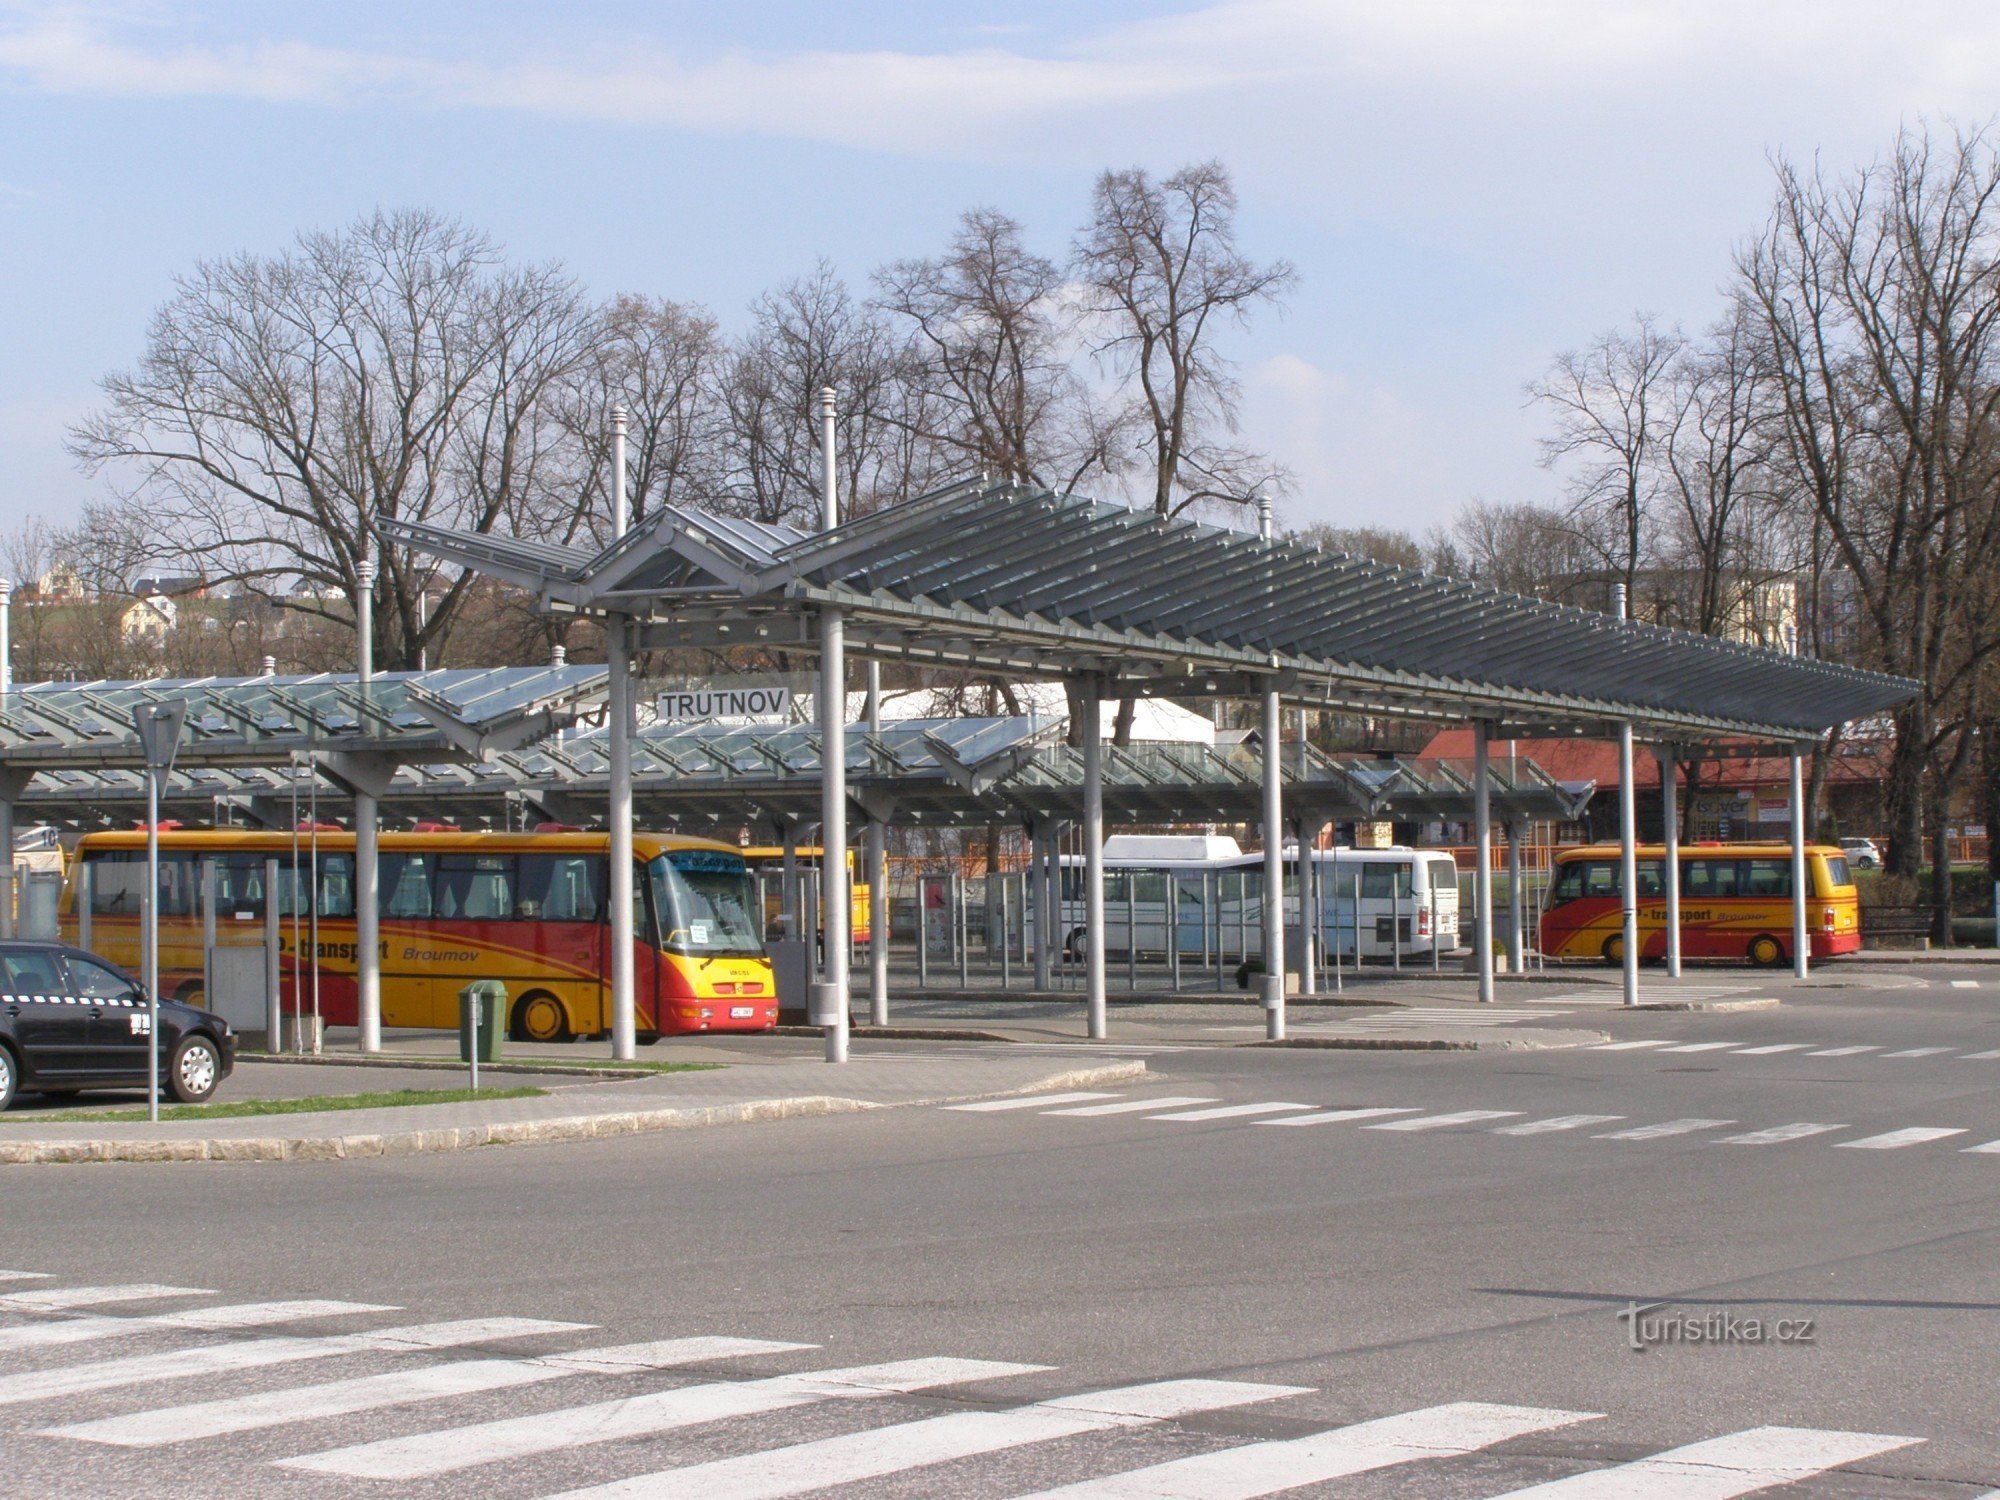 Σταθμός λεωφορείων Trutnov